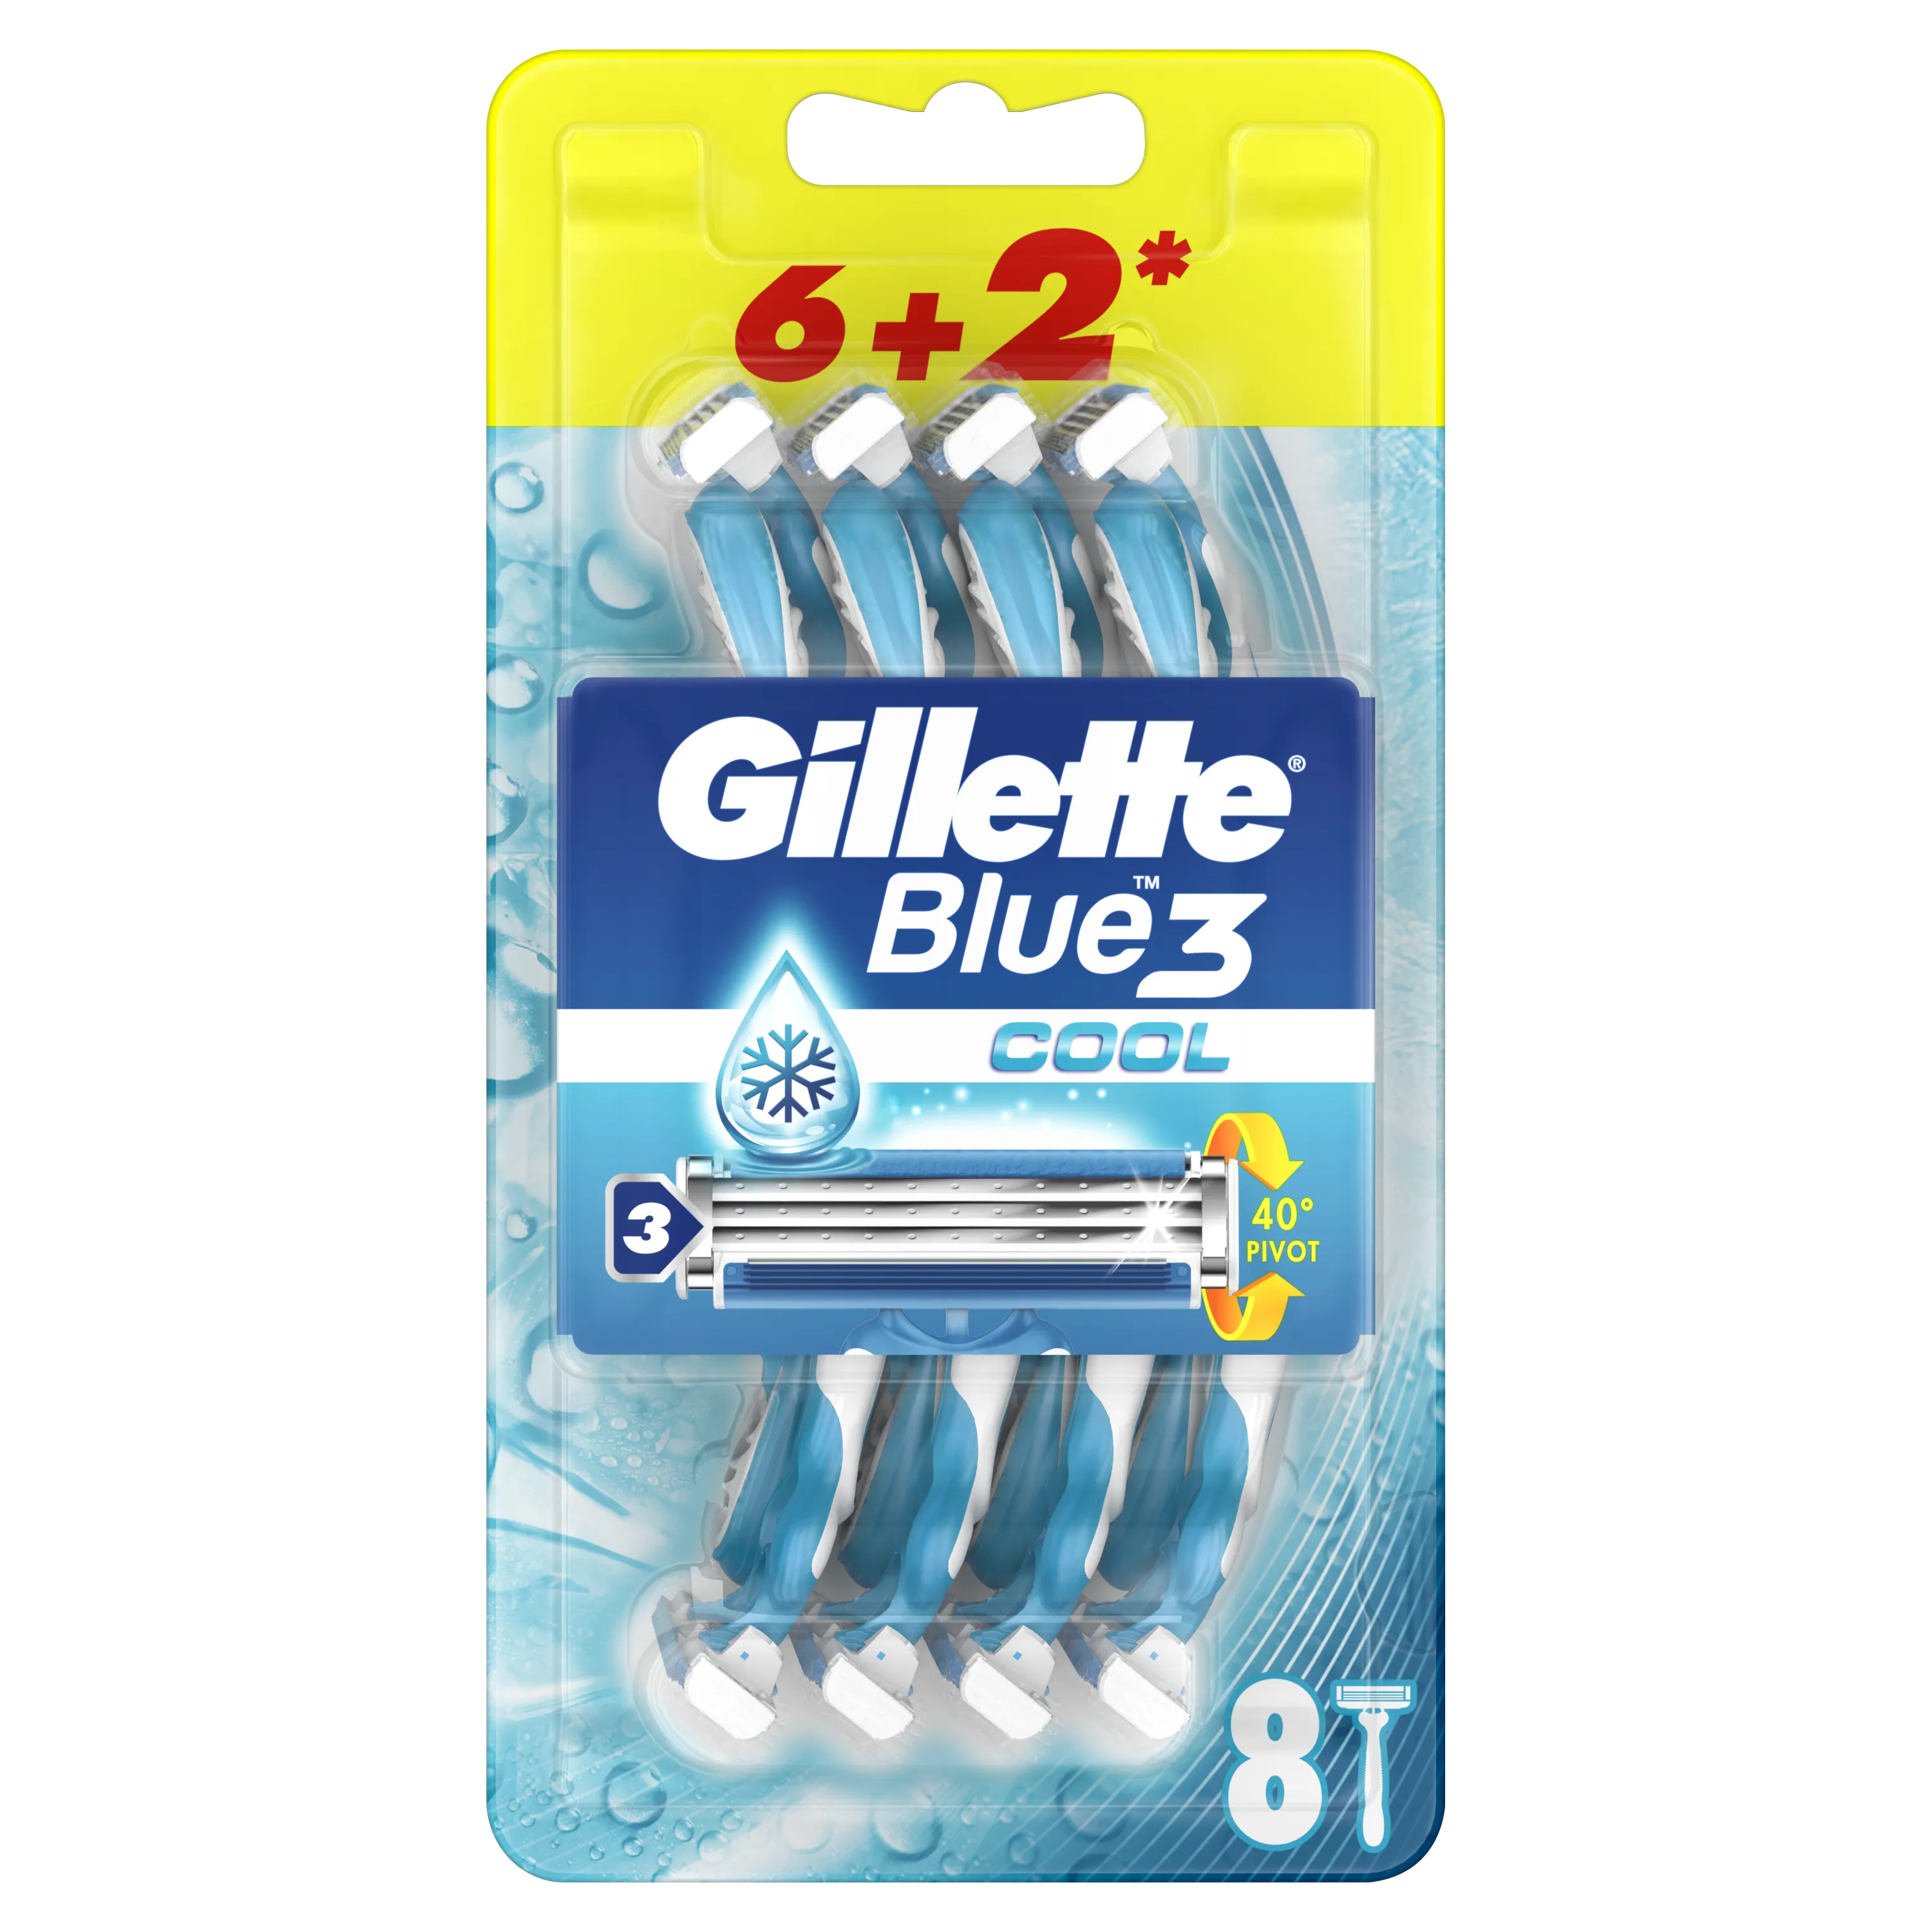 Gillette Blue3 Cool Jednorazowa maszynka do golenia dla mężczyzn, 6+2 szt.